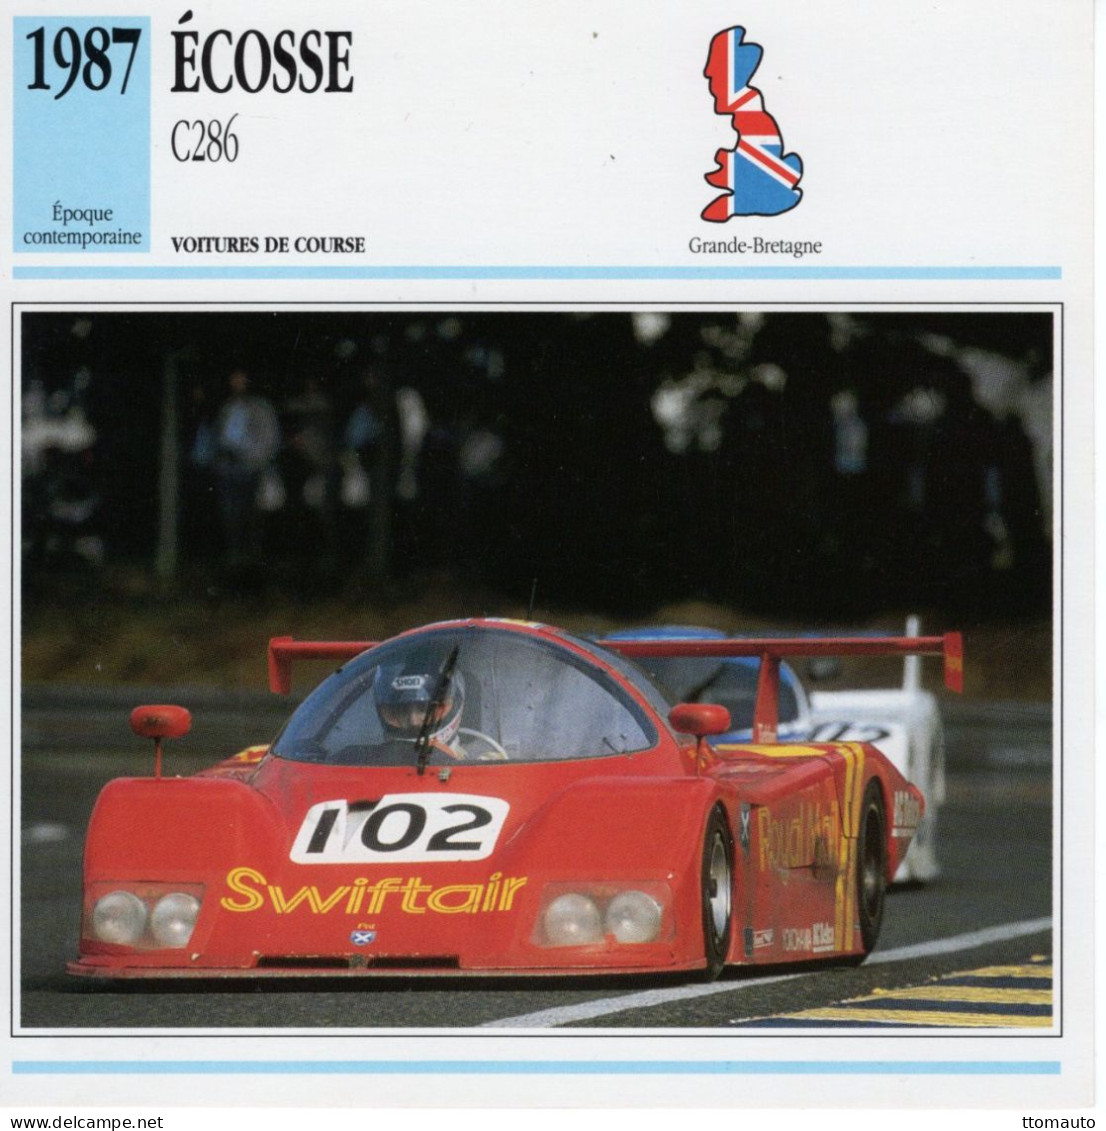 Fiche  -  Voiture De Course Le Mans  -  Écosse C286 (1987)  - Pilotes: Duez/Mallock/Leslie -  Carte De Collection - Cars